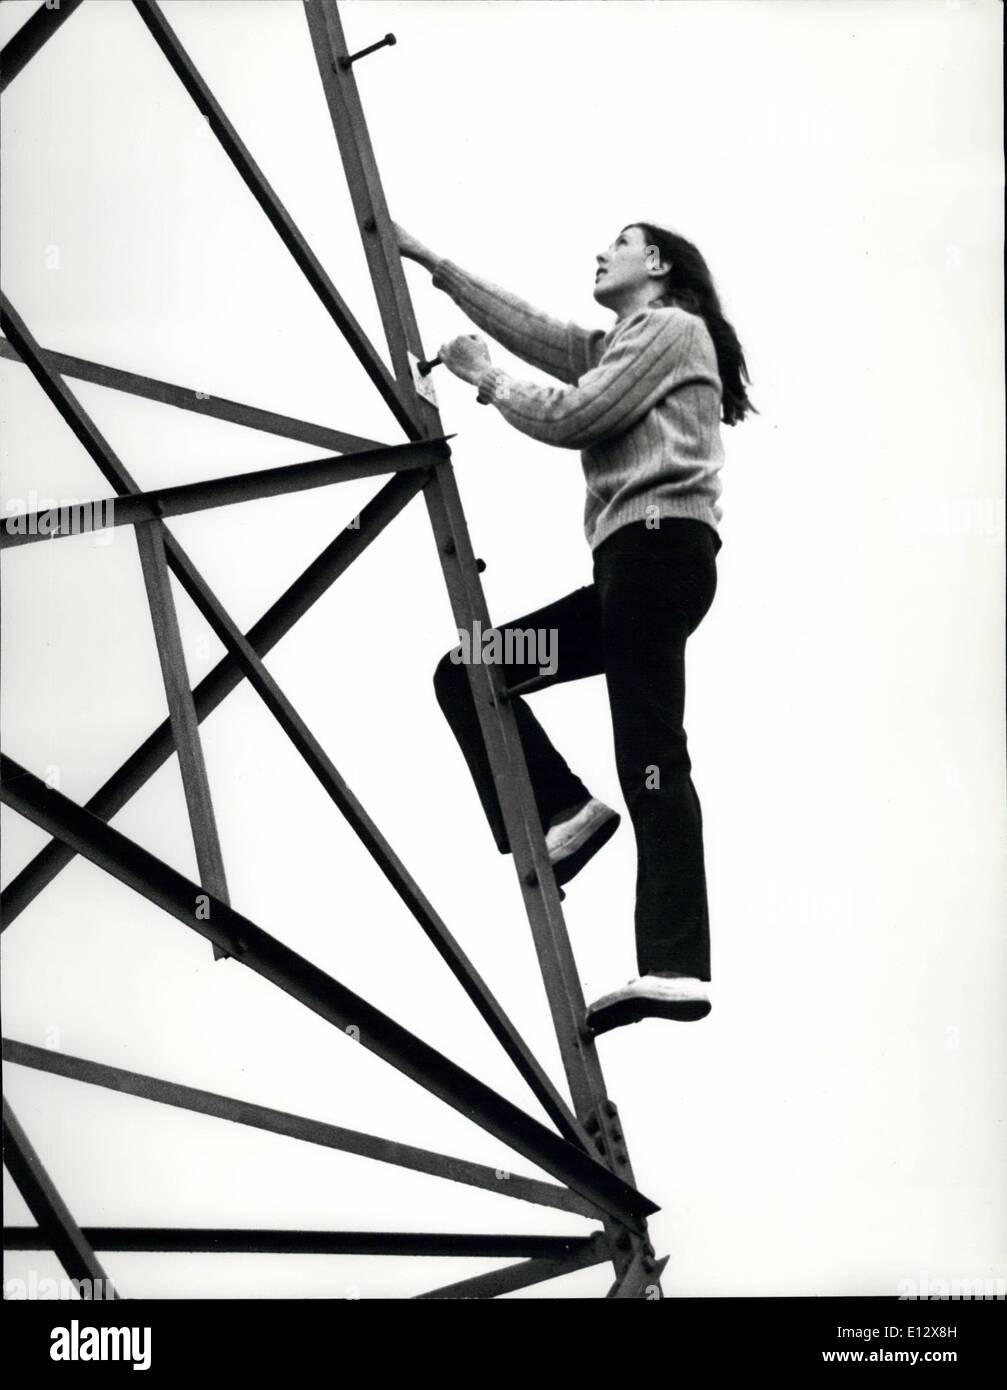 25 février 2012 - Celia Marr monte le pylône dans le jardin Banque D'Images